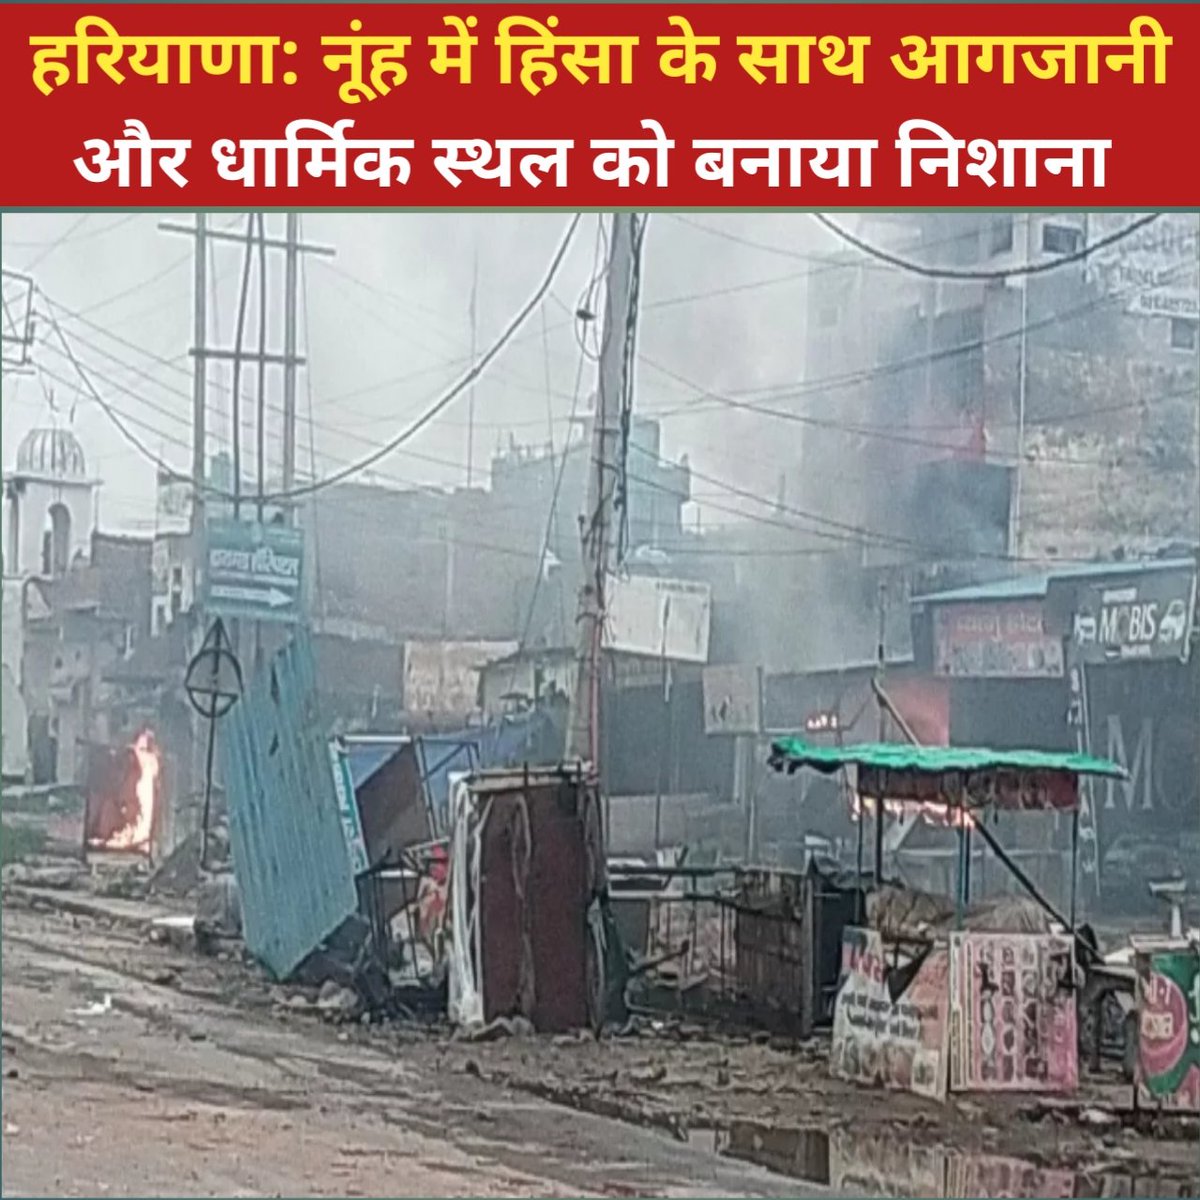 हरियाणा : नूंह में हिंसा के साथ आगजानी और धार्मिक स्थल को बनाया निशाना
#hariyana 
#Nuh 
#Gurgaon 
#GurgaonNews 
#hariyananews 
#violencecase 
#trendingnow 
#trendingnews  dailynewsupdatepro.com/hariyana-nuh-m…